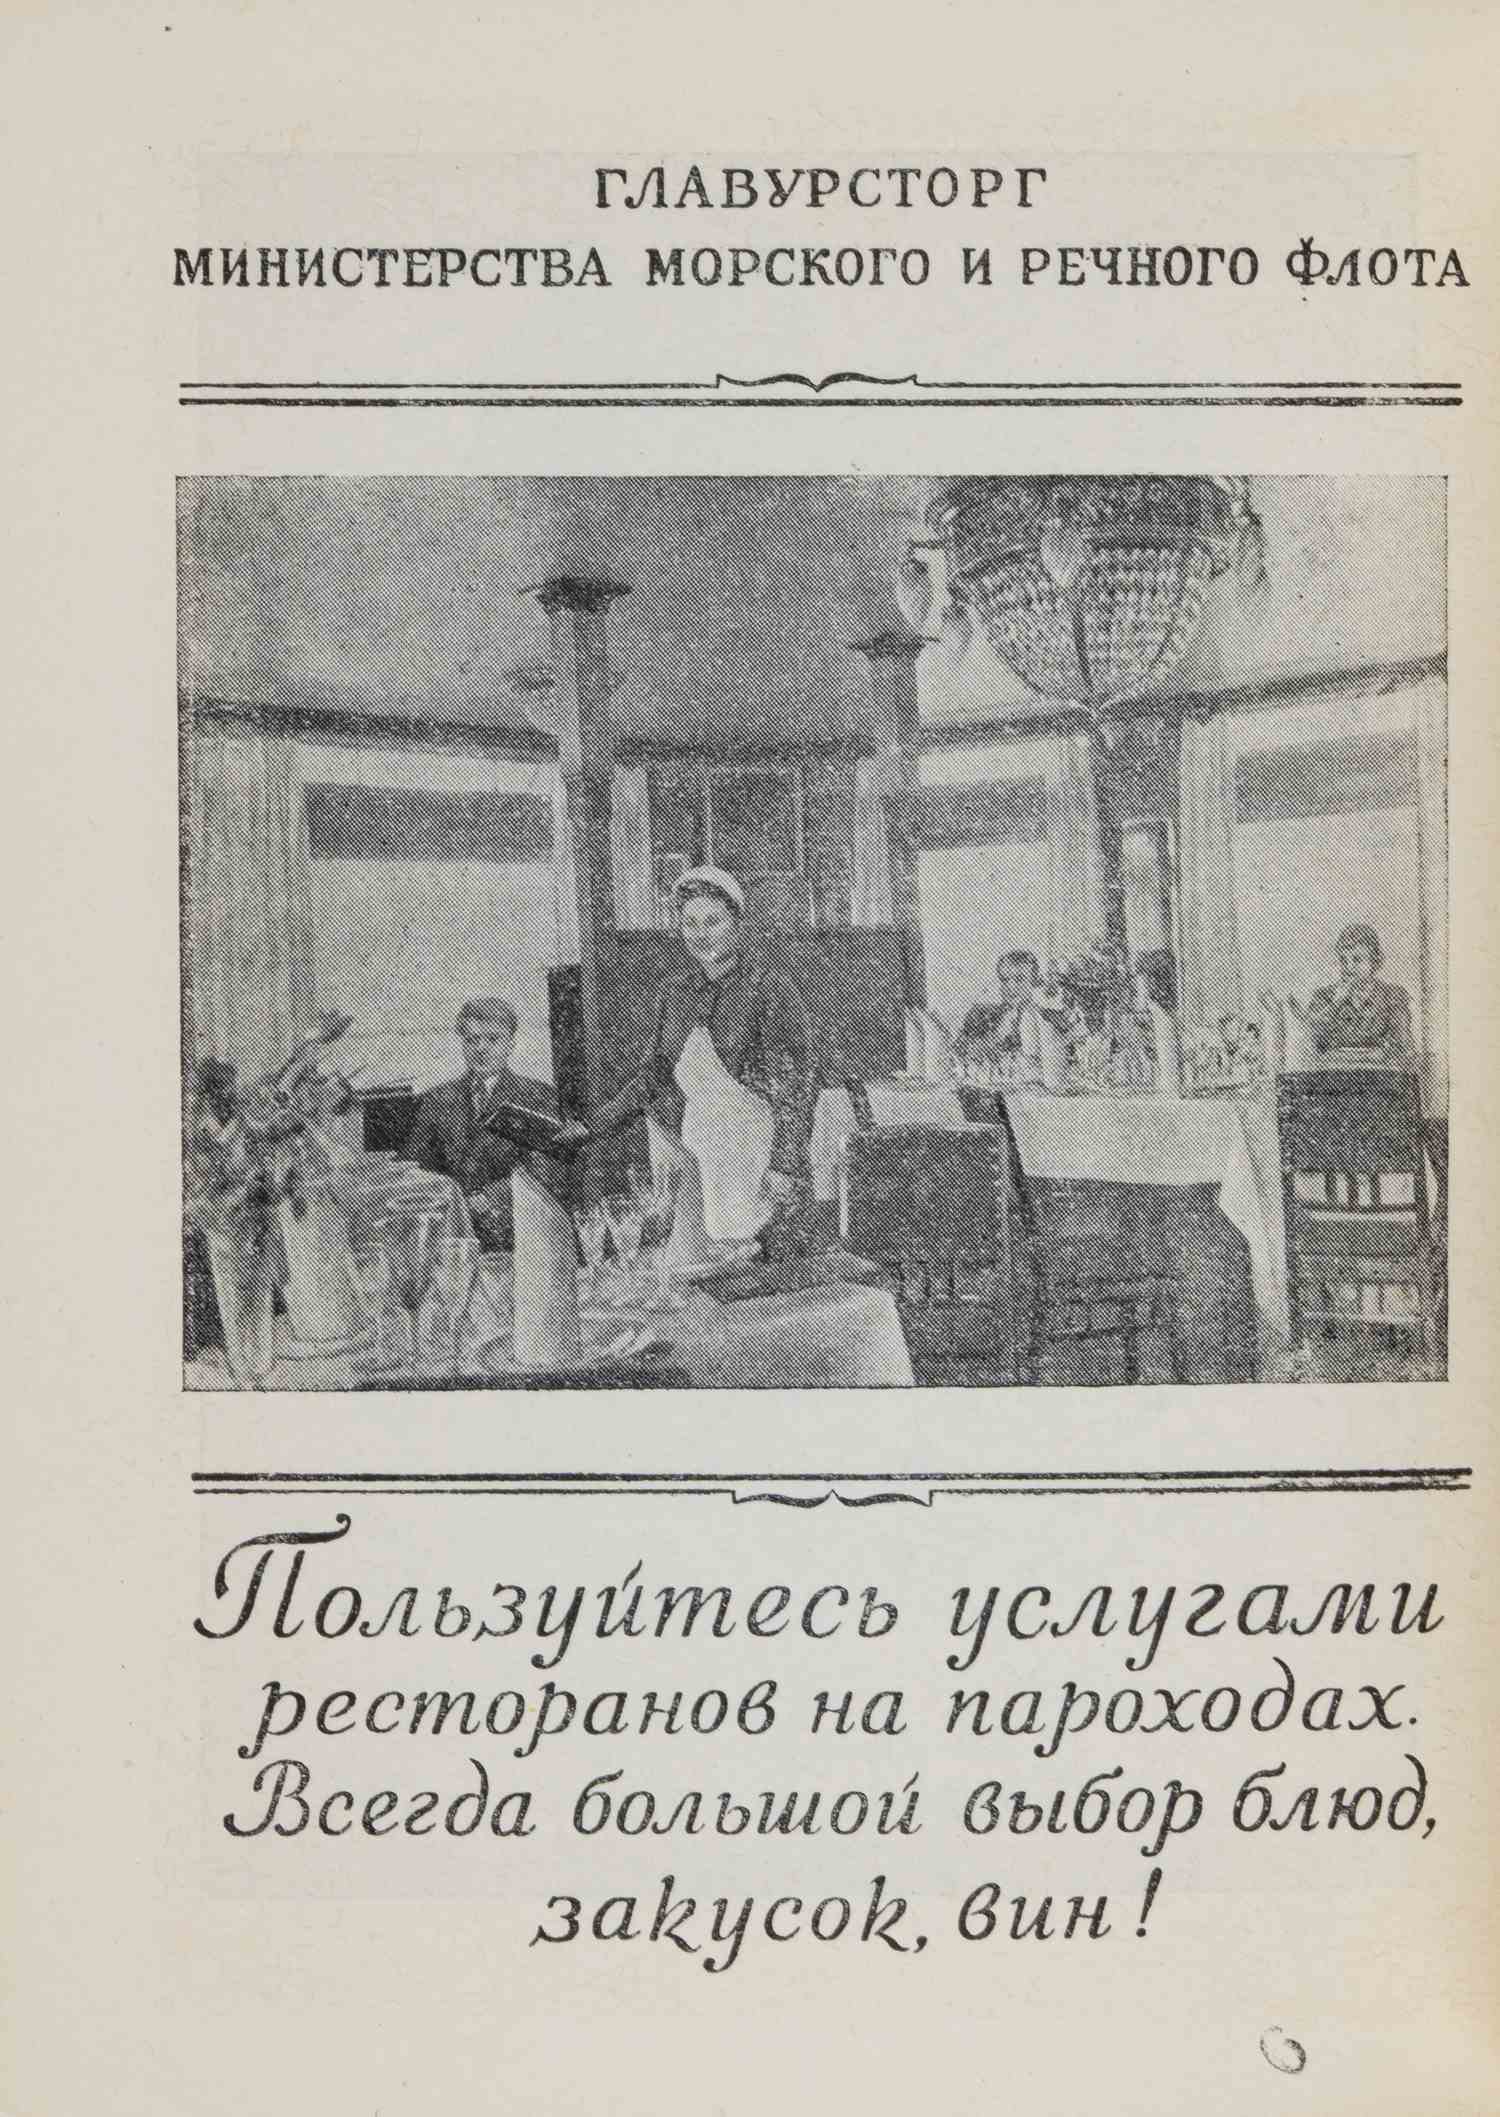 Волга. 3-е издание (М., 1954).